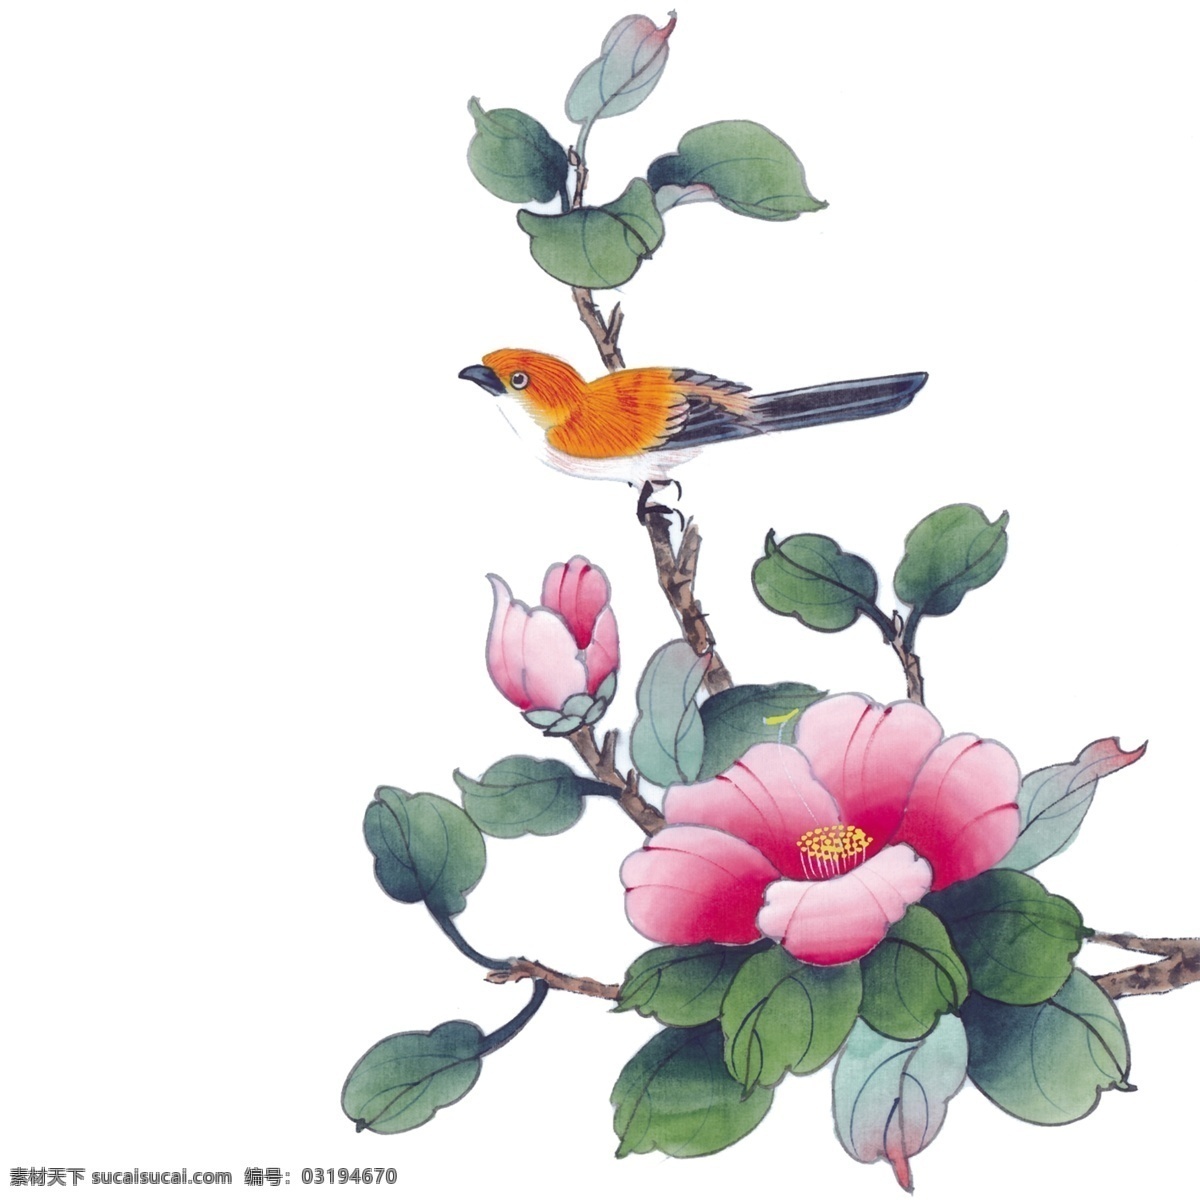 手绘 花鸟 分层 图 手绘花鸟 分层图 国画 中国风 文化艺术 绘画书法